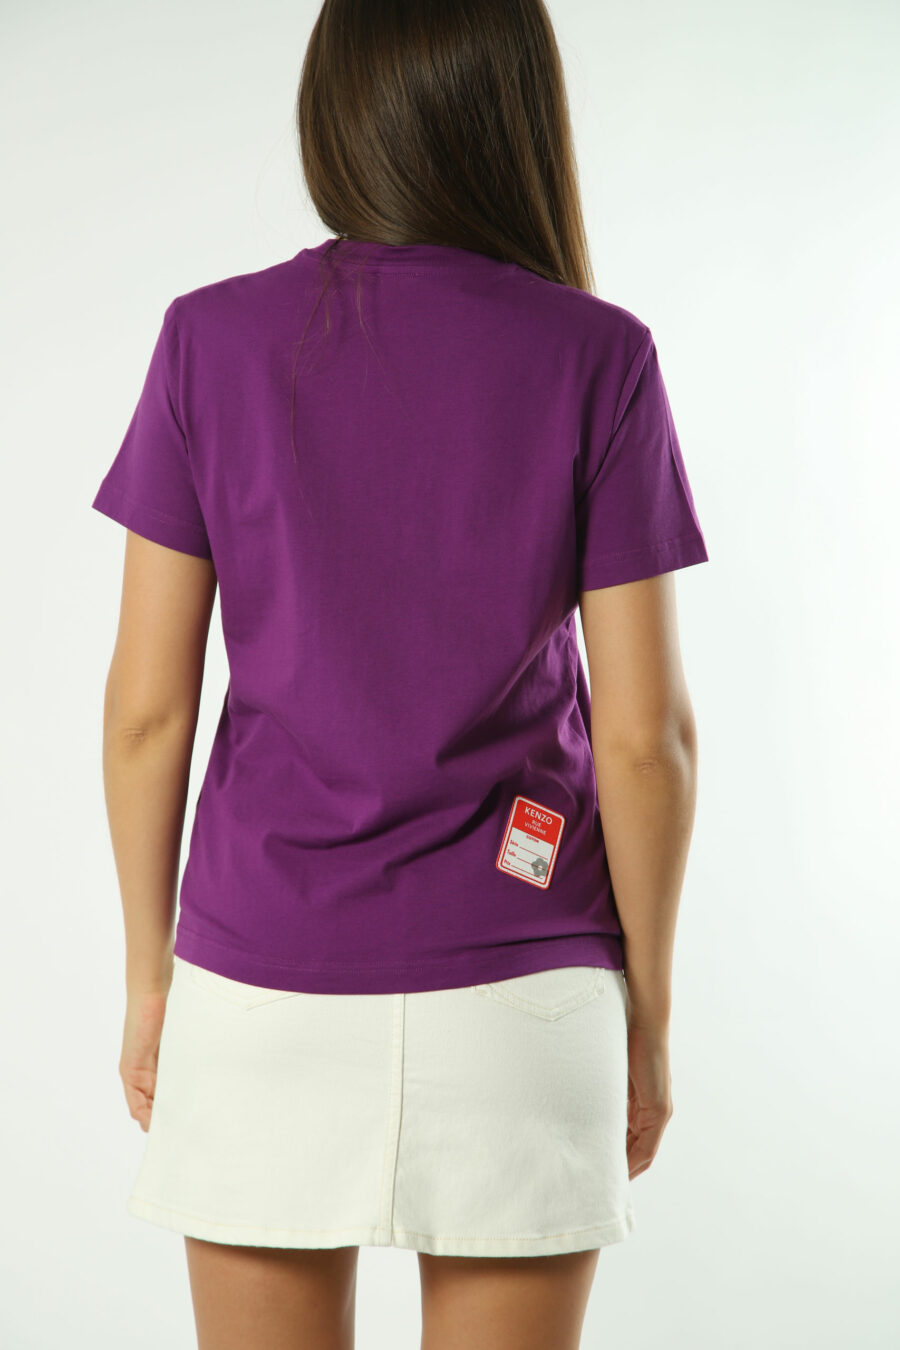 Violettes T-Shirt mit weißem "rue vivienne" Maxilogo - Fotos 1359